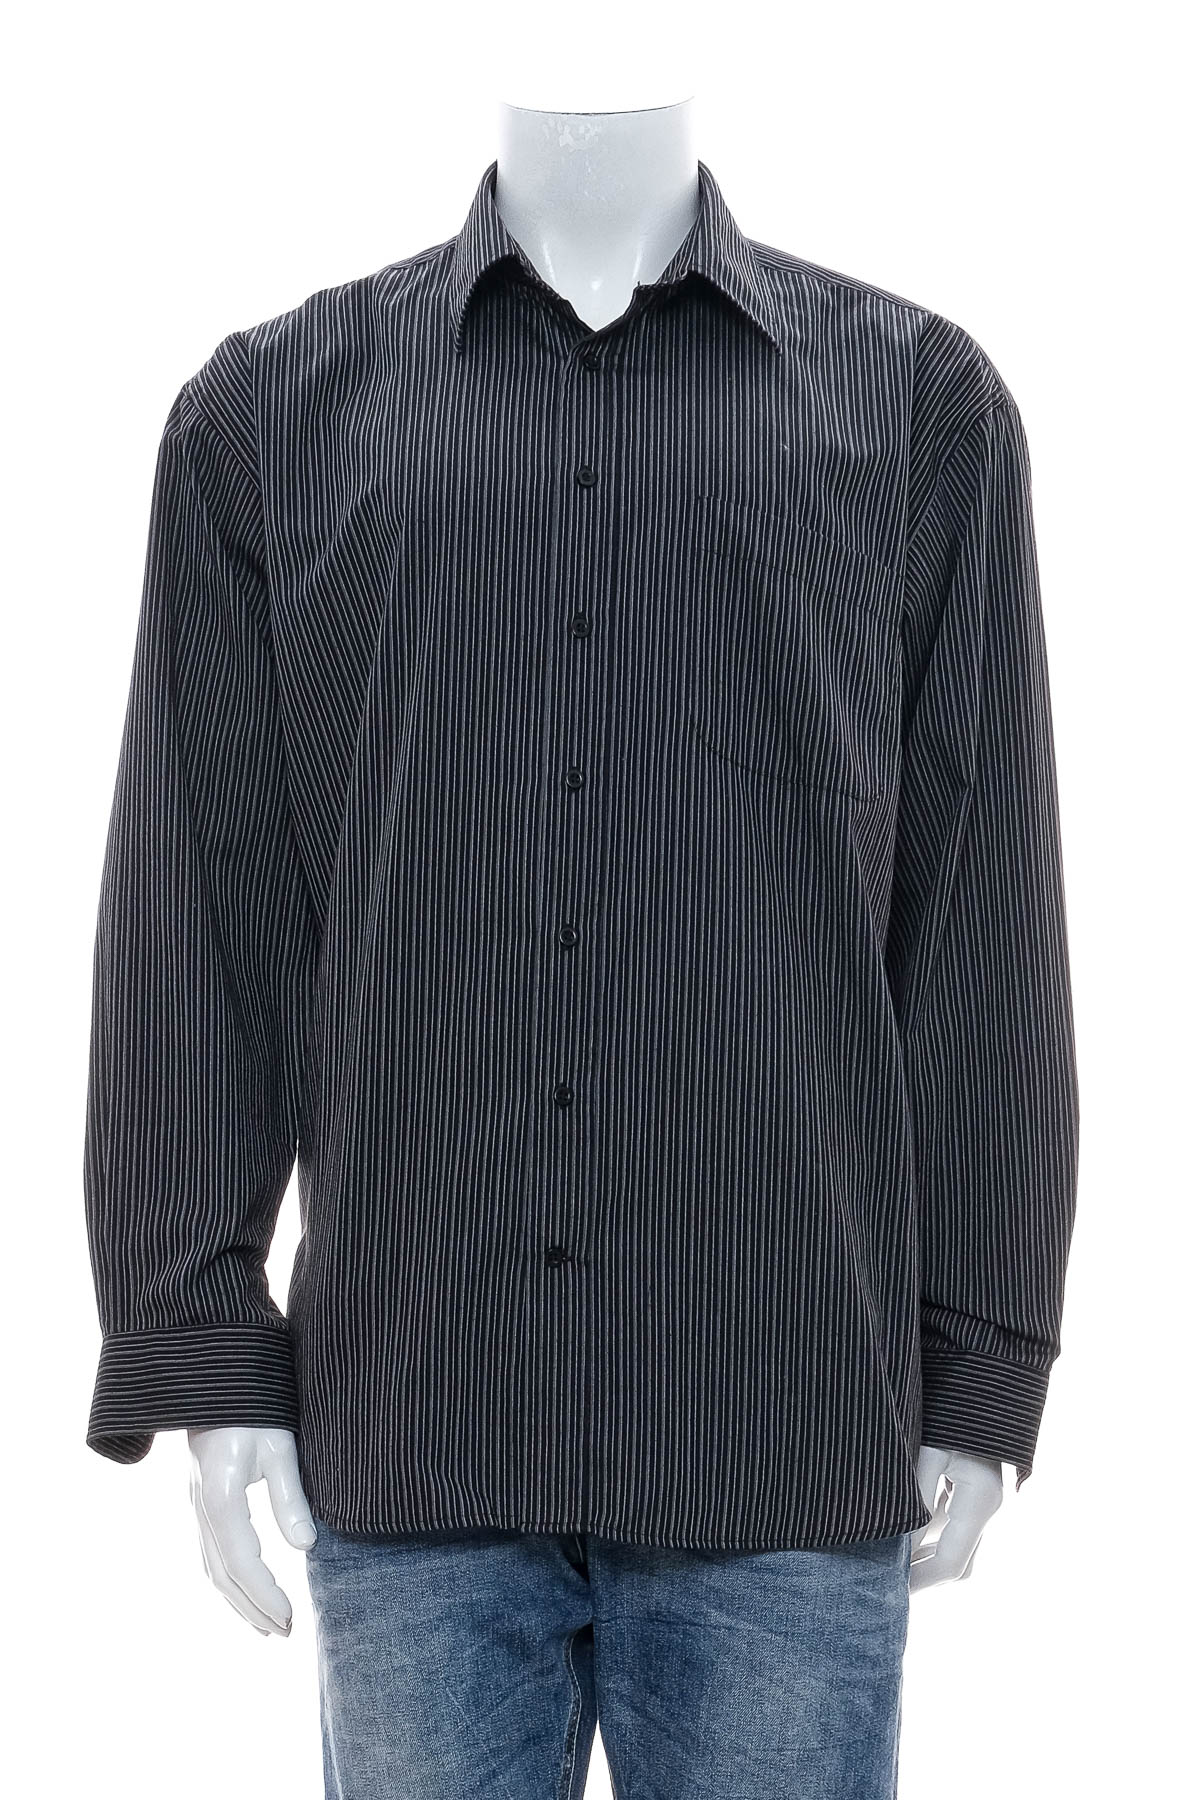 Ανδρικό πουκάμισο - Barisal - 0